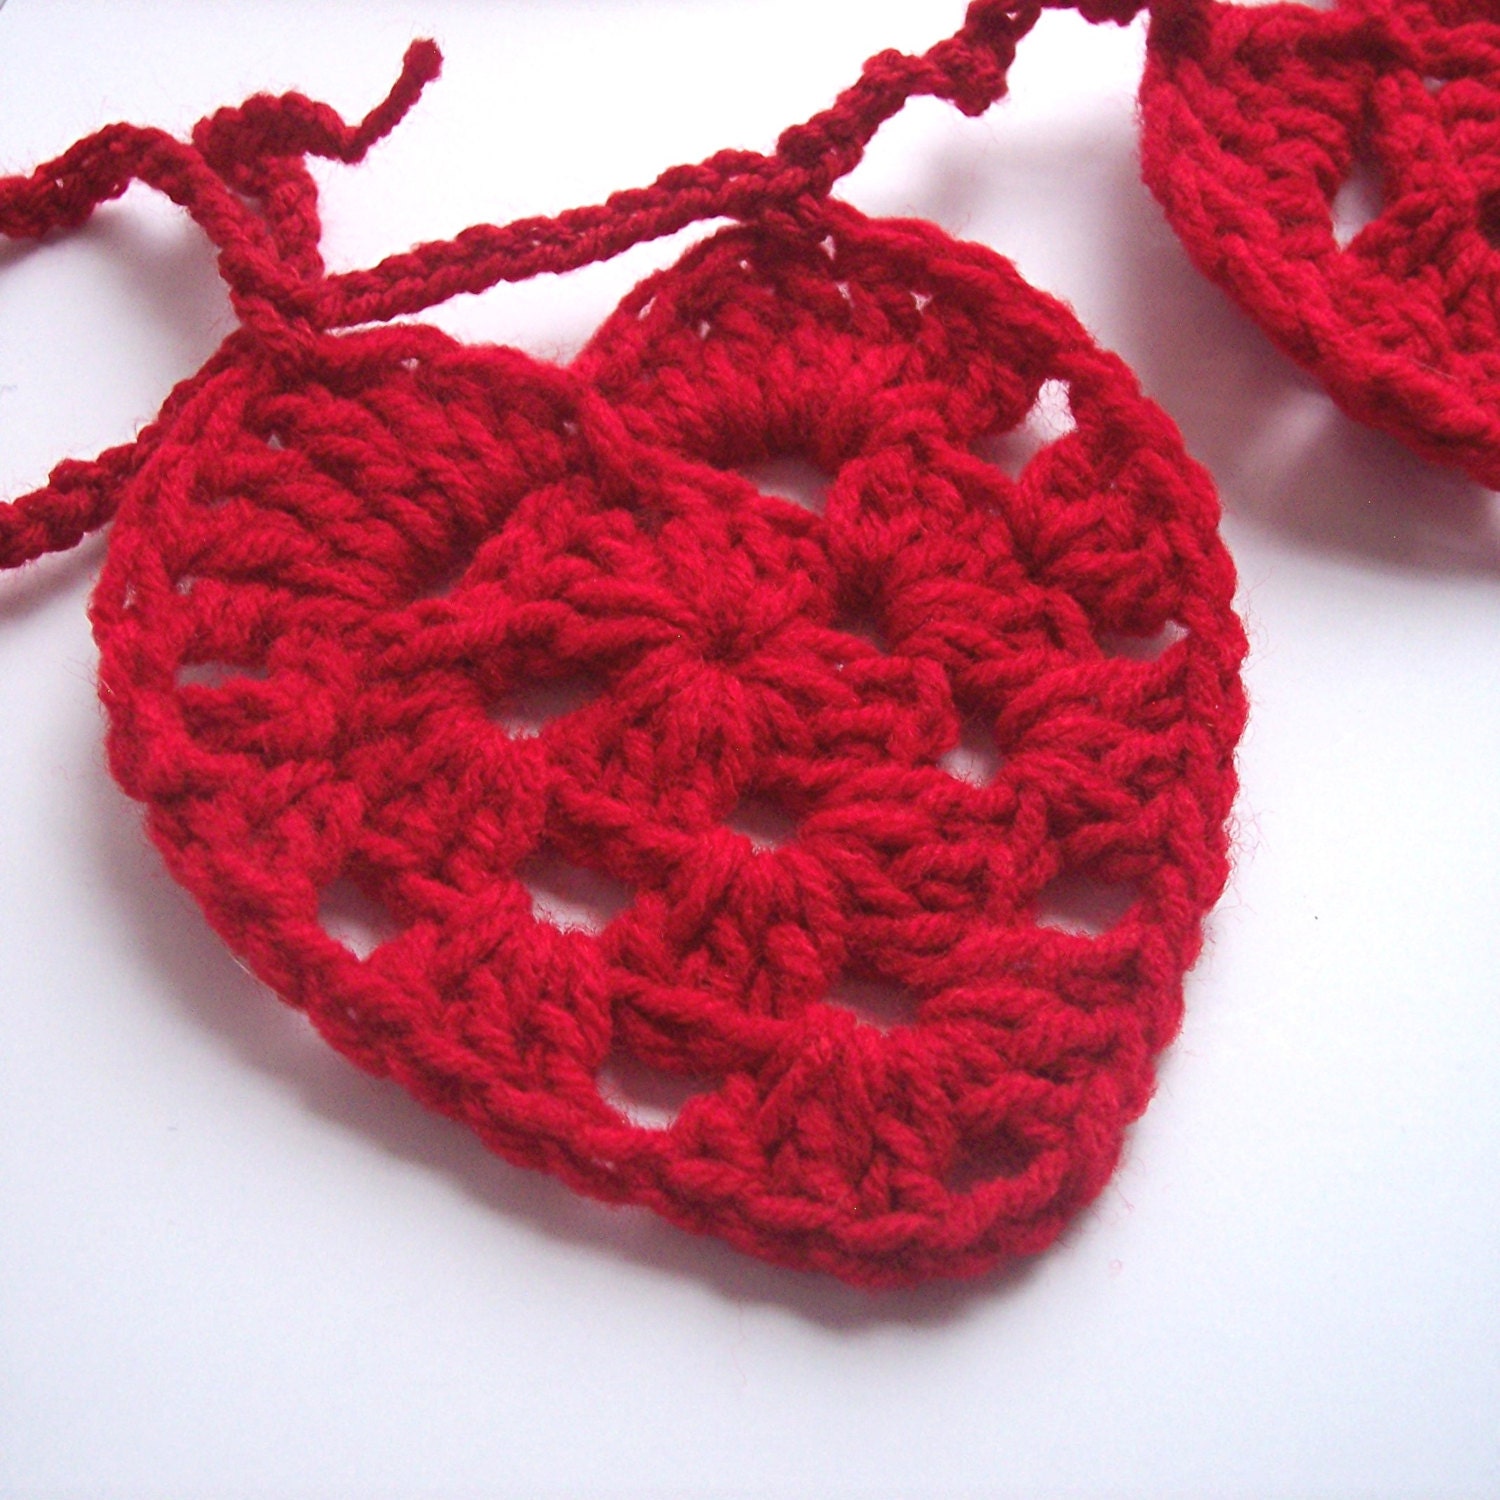 Heart Garland - Crochet Valentine Heart Garland Bunting Valentine's Day Red Hearts Crochet Garland - Ready to Ship - ThePrairieCottage